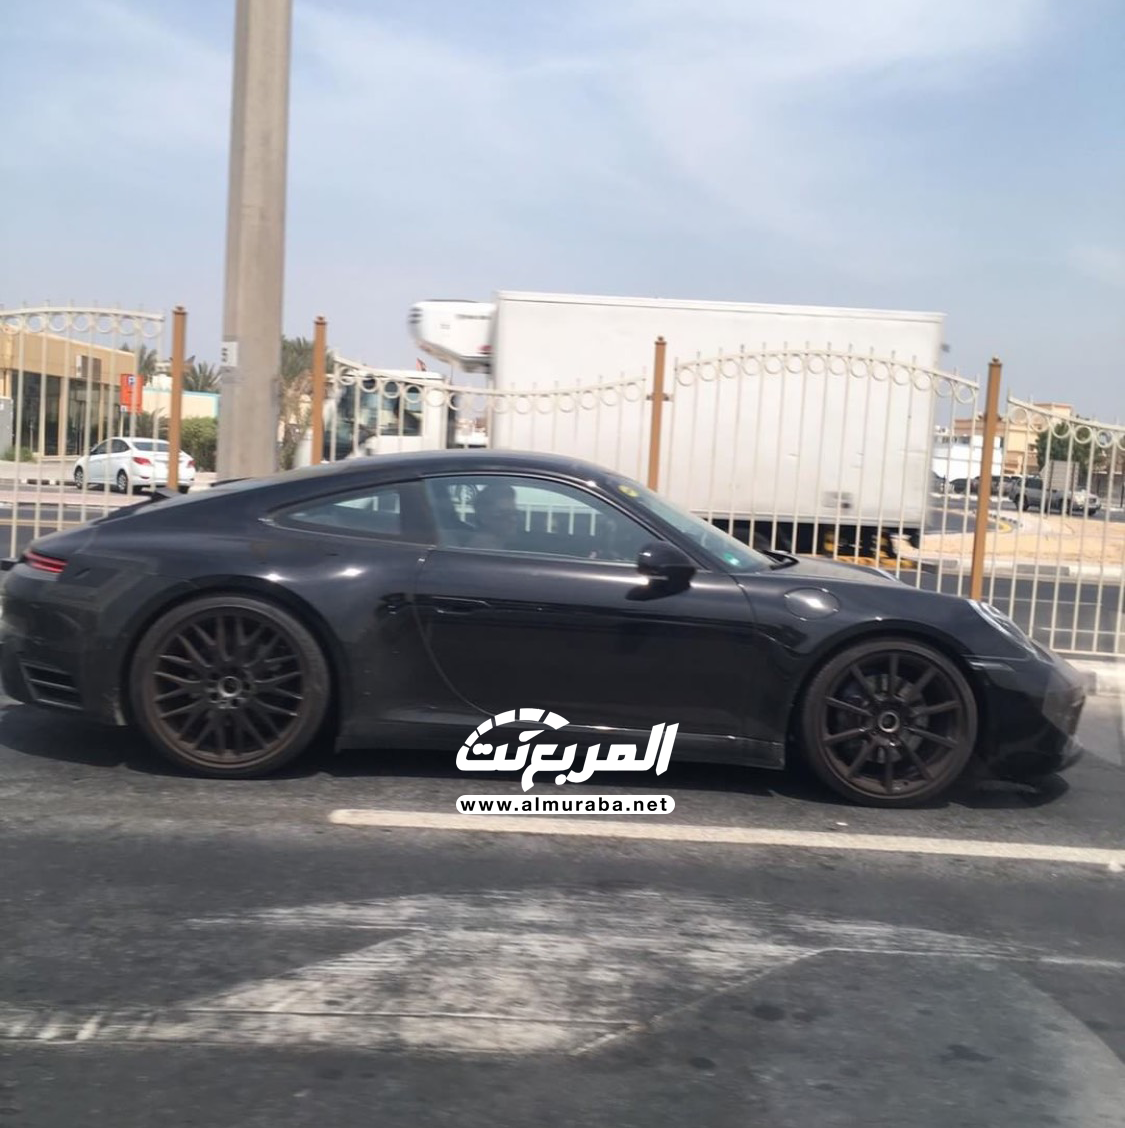  “بالصور” بورش 911 الجديدة كلياً تختبر نفسها في شوارع مدينة دبي 114